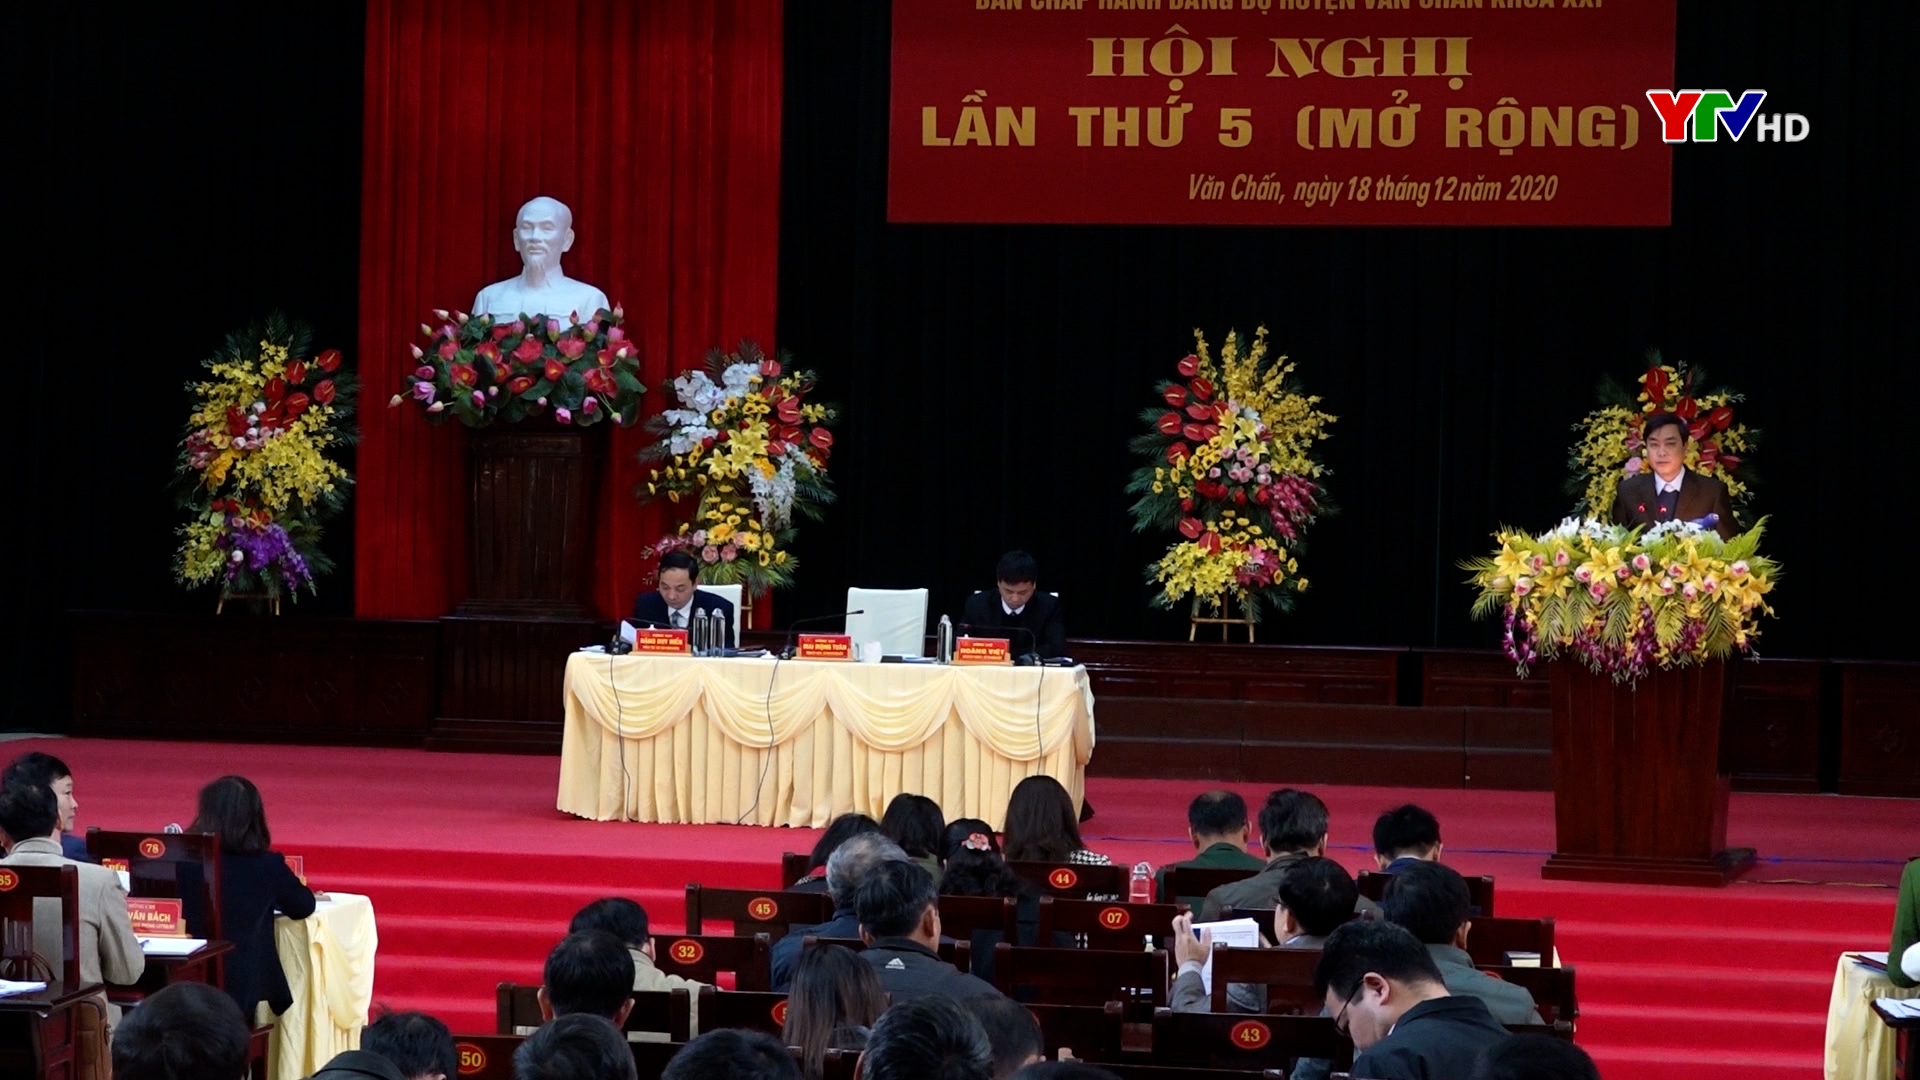 Hội nghị BCH Đảng bộ huyện Văn Chấn lần thứ 5 ( mở rộng)